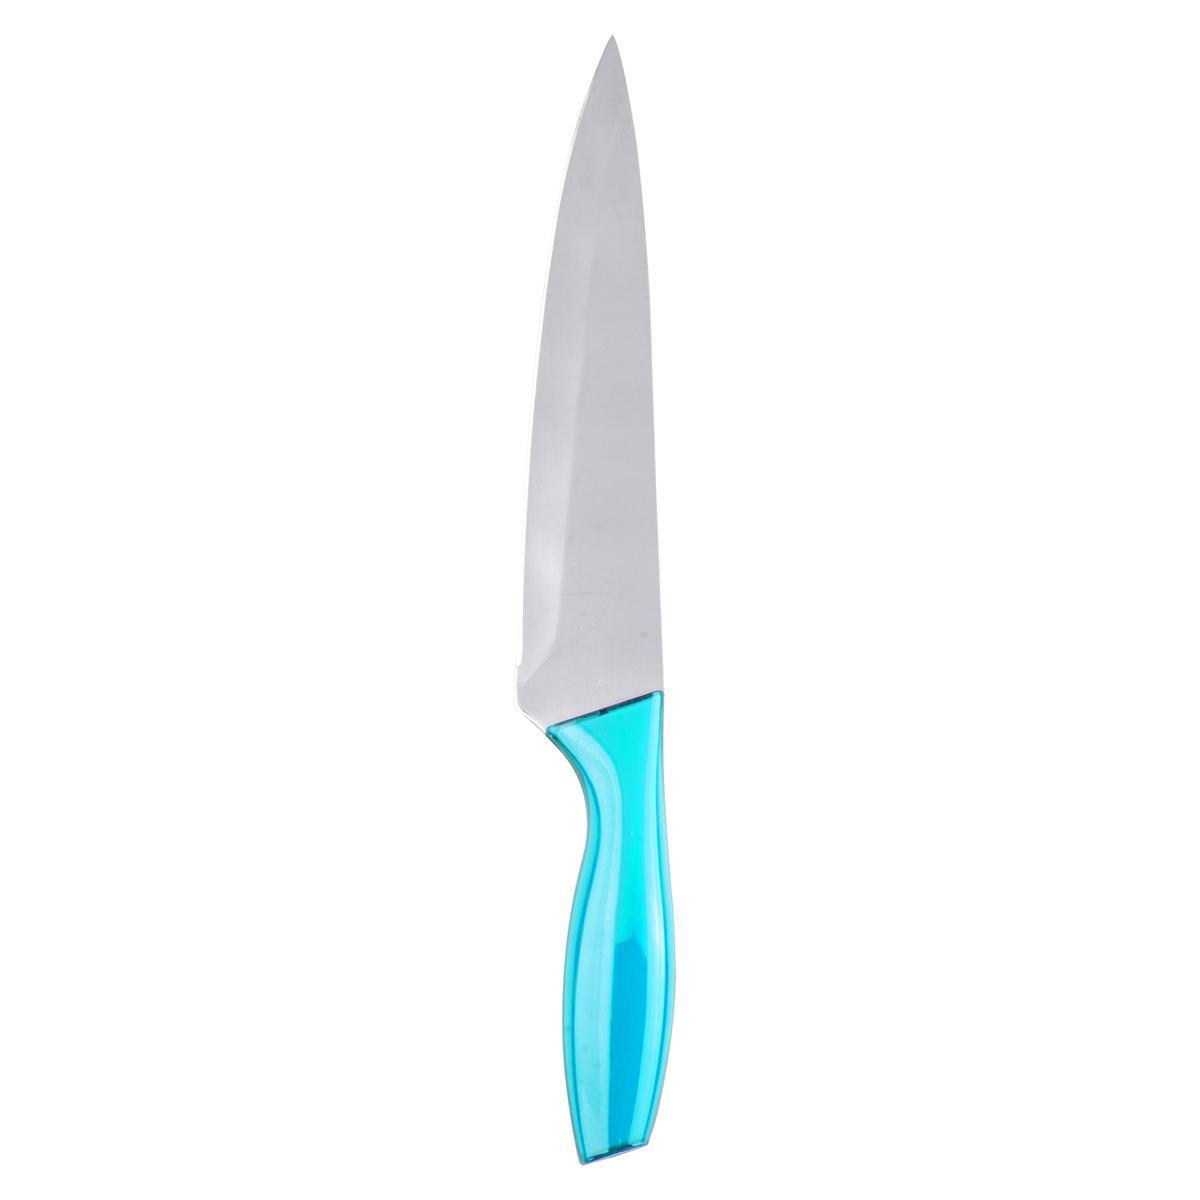 3 couteaux - Plastique et acier inoxydable - Bleu